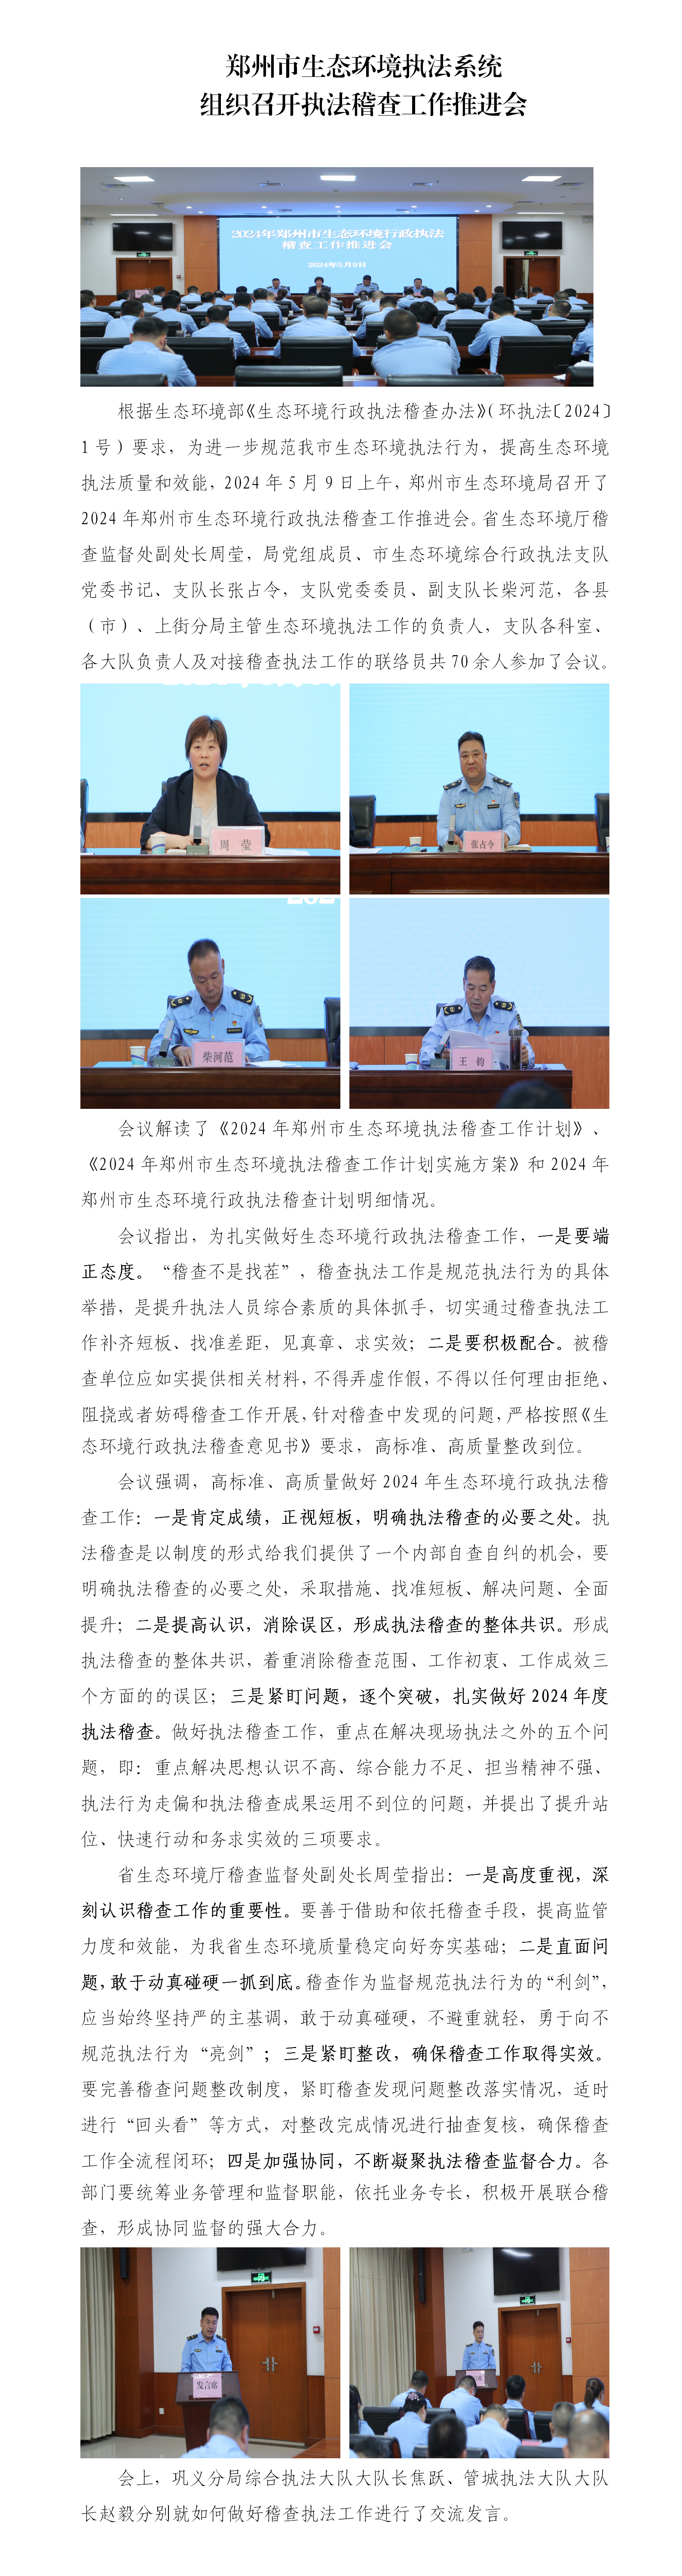 第11期 郑州市生态环境执法系统组织召开执法稽查工作推进会_01.png